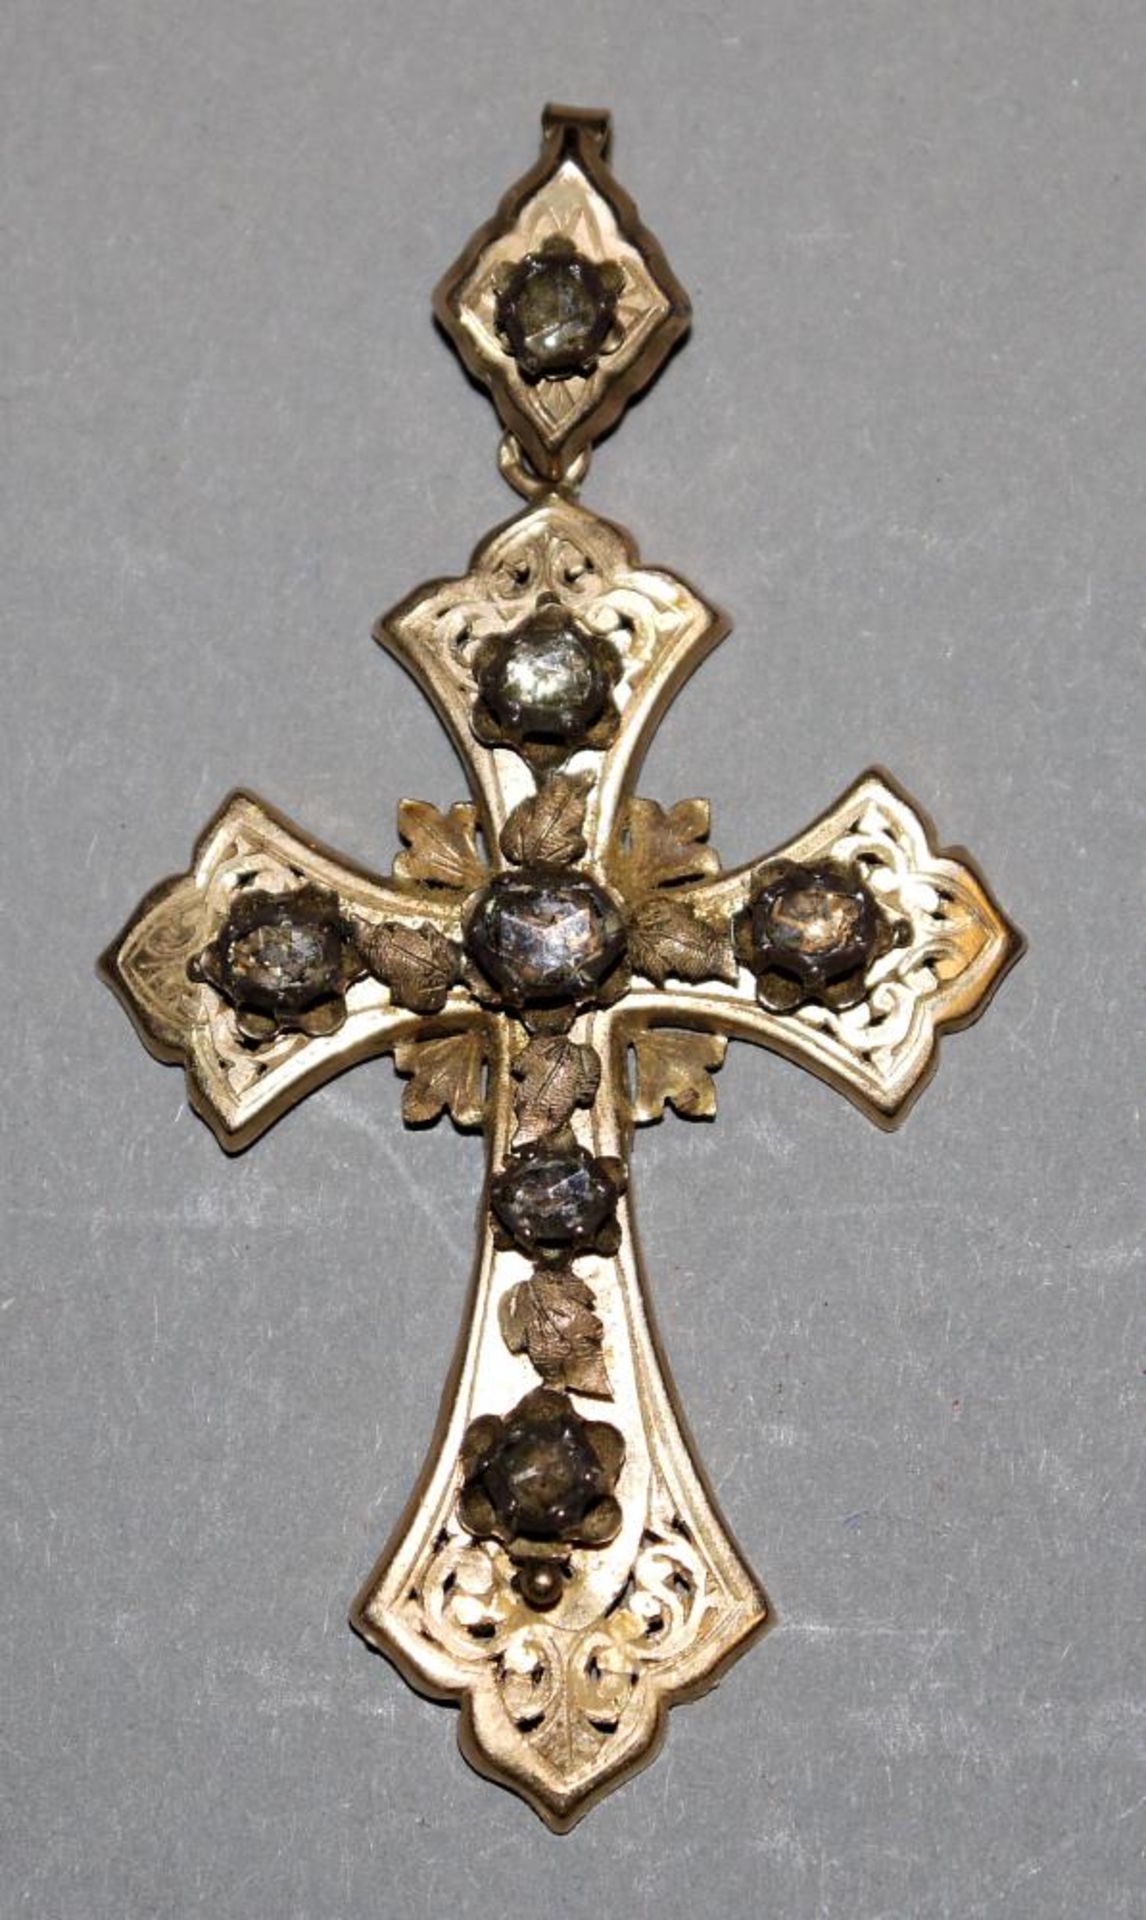 Kreuz-Anhänger mit Diamanten, Gold, Frankreich, 19. Jh. 18kt Gelbgold, gepr., besetzt mit 7